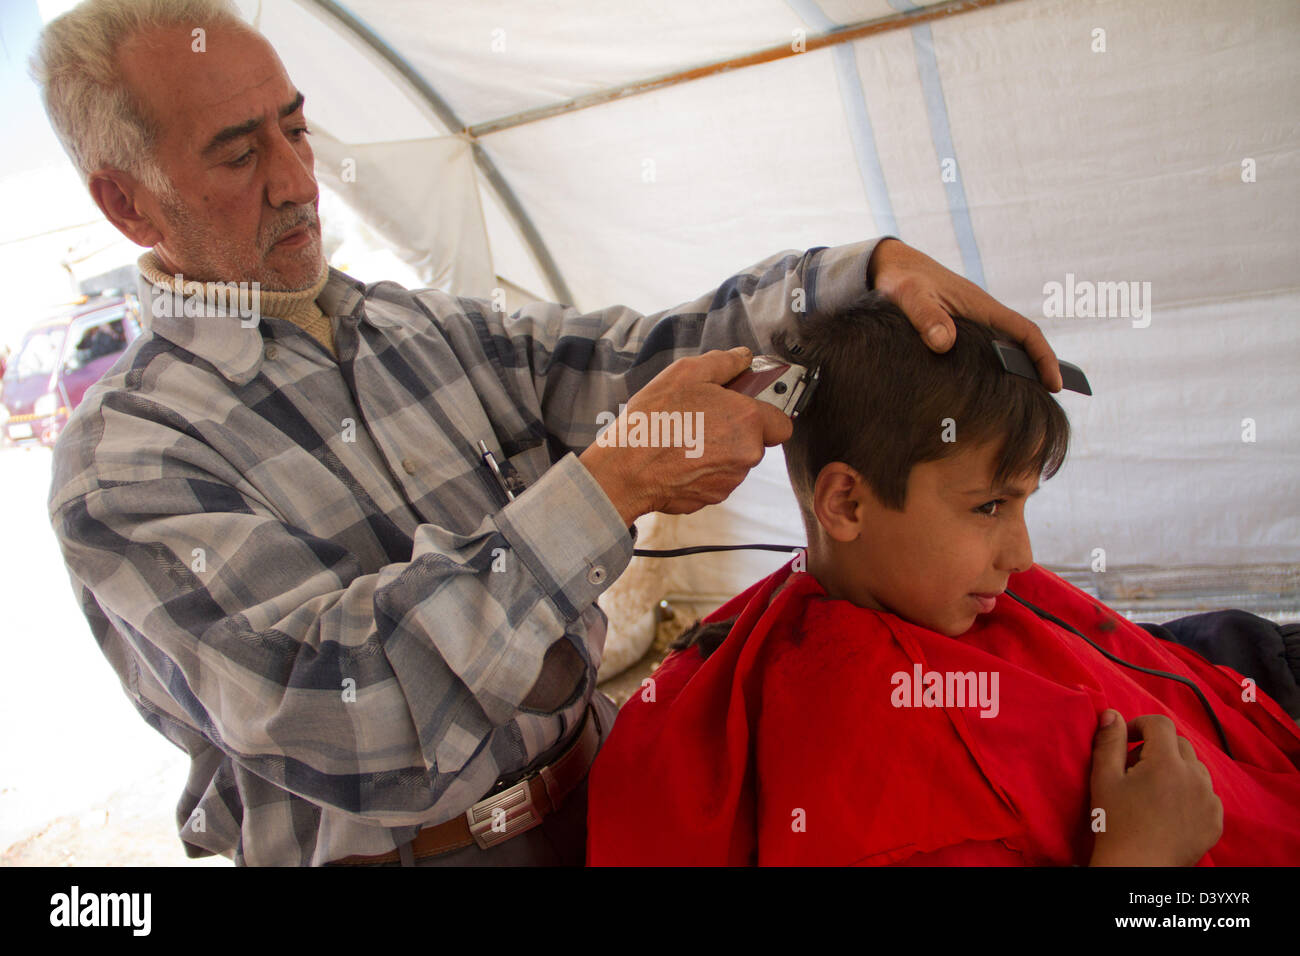 Azaz, Siria. El 27 de febrero de 2013. Un niño obtiene un recorte en el campamento de refugiados de Azaz Azaz siria de casados. Febrero 27, 2013. Crédito: PixelPro / Alamy Live News Foto de stock